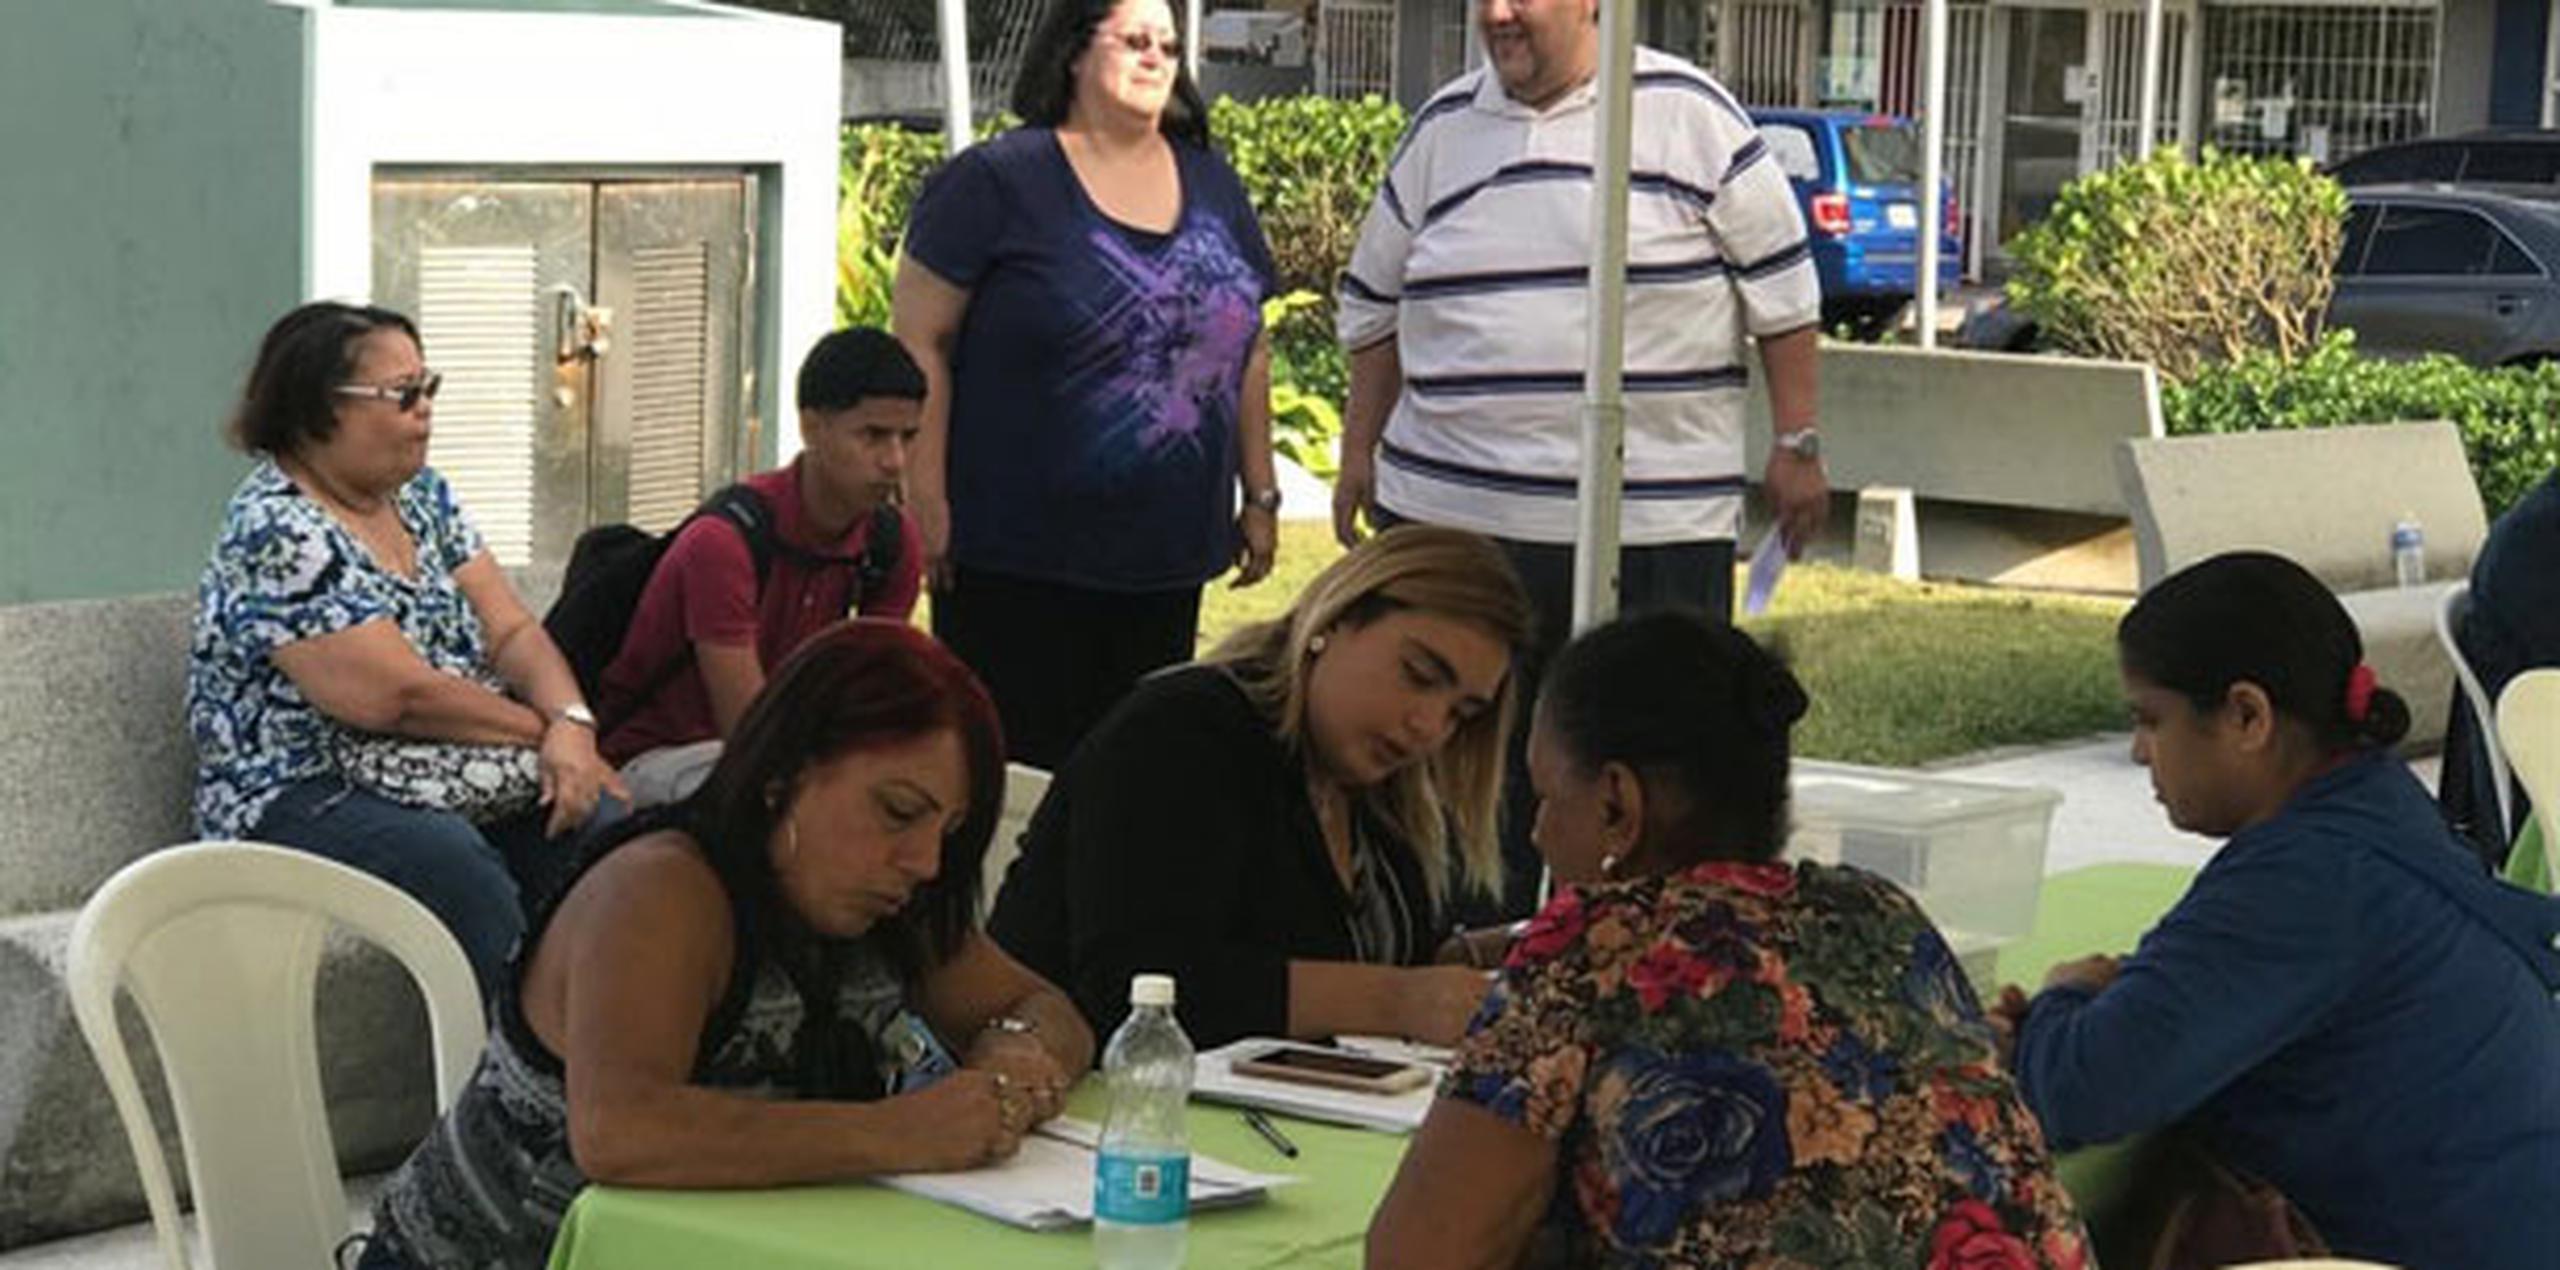 Personal de la Coalición de Vacunación de Puerto Rico Voces, así como del Departamento de Salud, estuvieron administrando al público presente la vacuna contra la Influenza, al igual que contra el tétano y la pulmonía. (Suministrada)